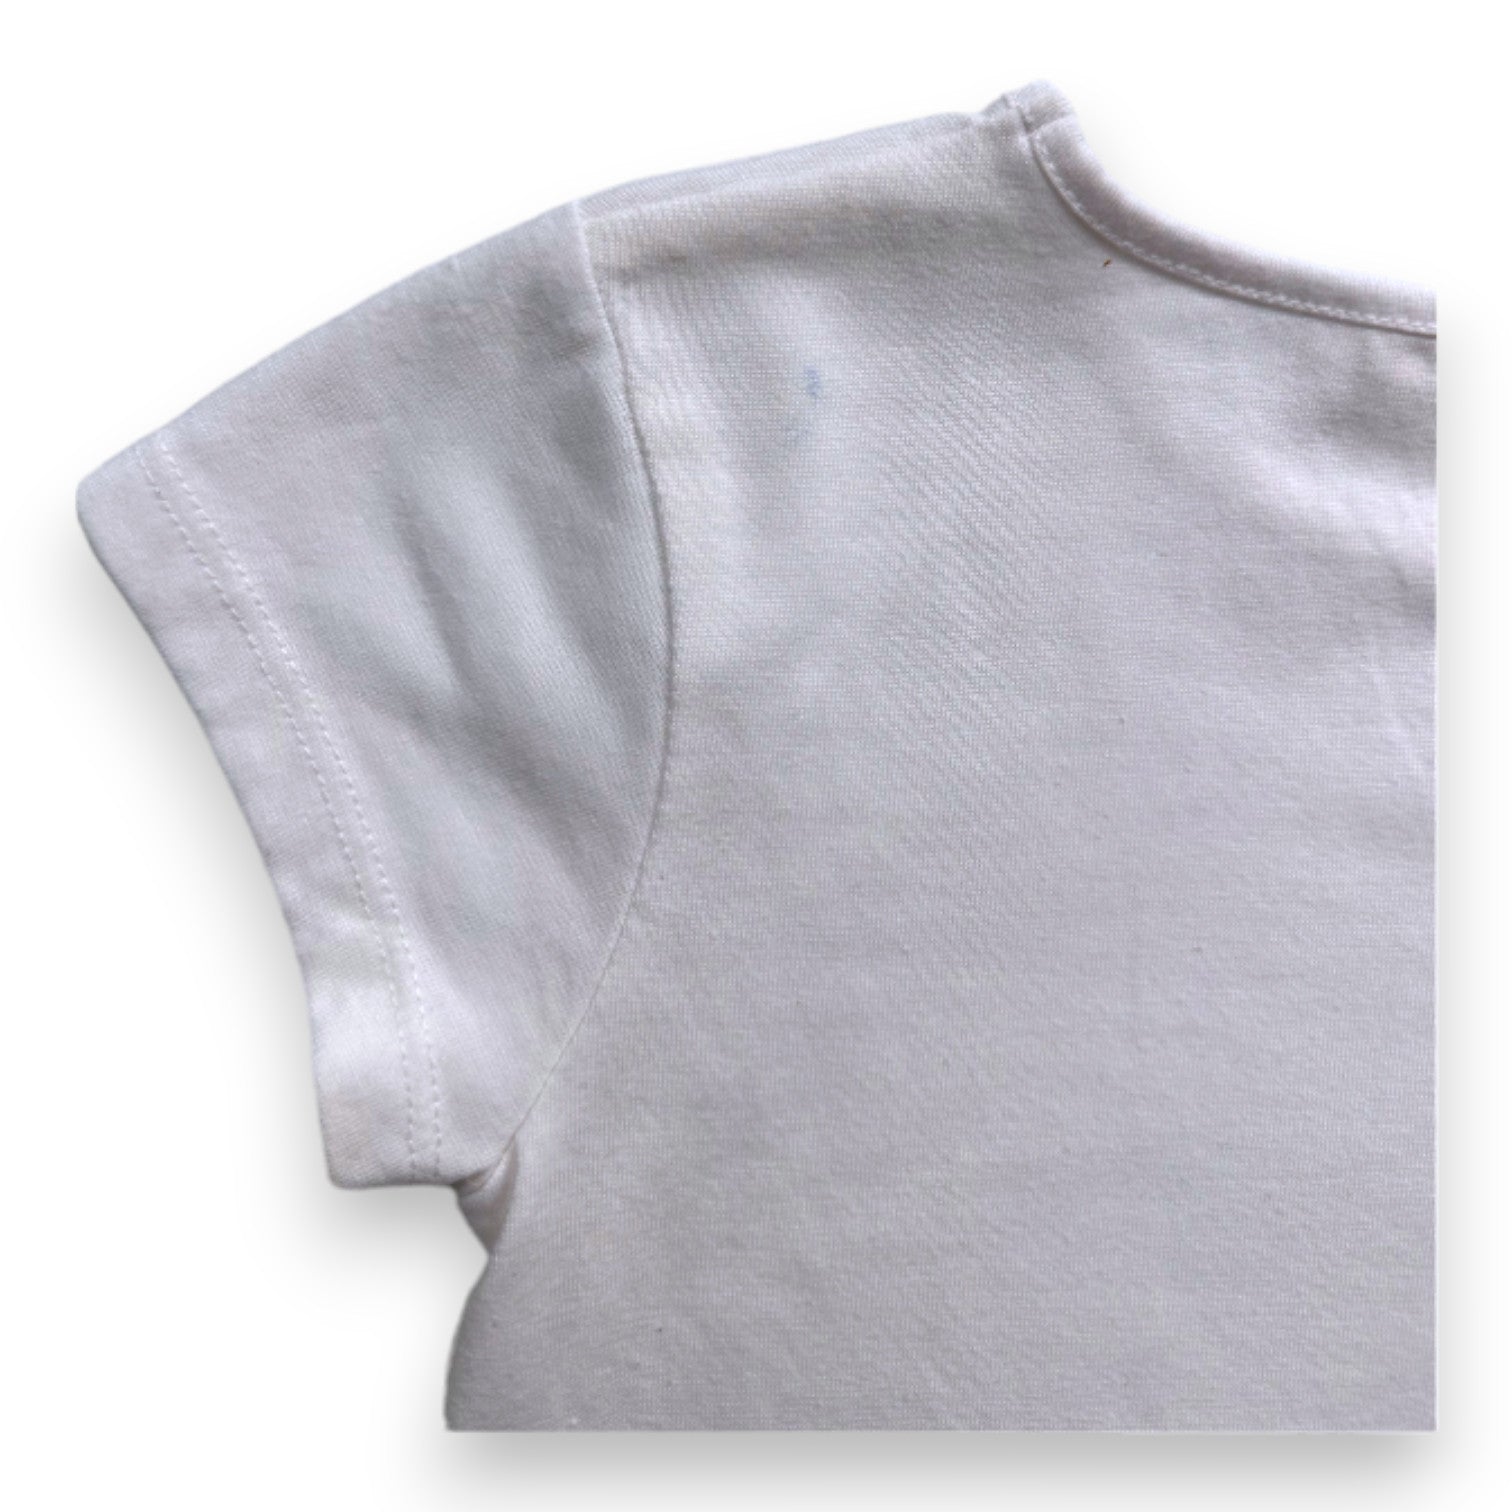 BILLIE BLUSH - T-shirt blanc à manches courtes avec broderie - 4 ans